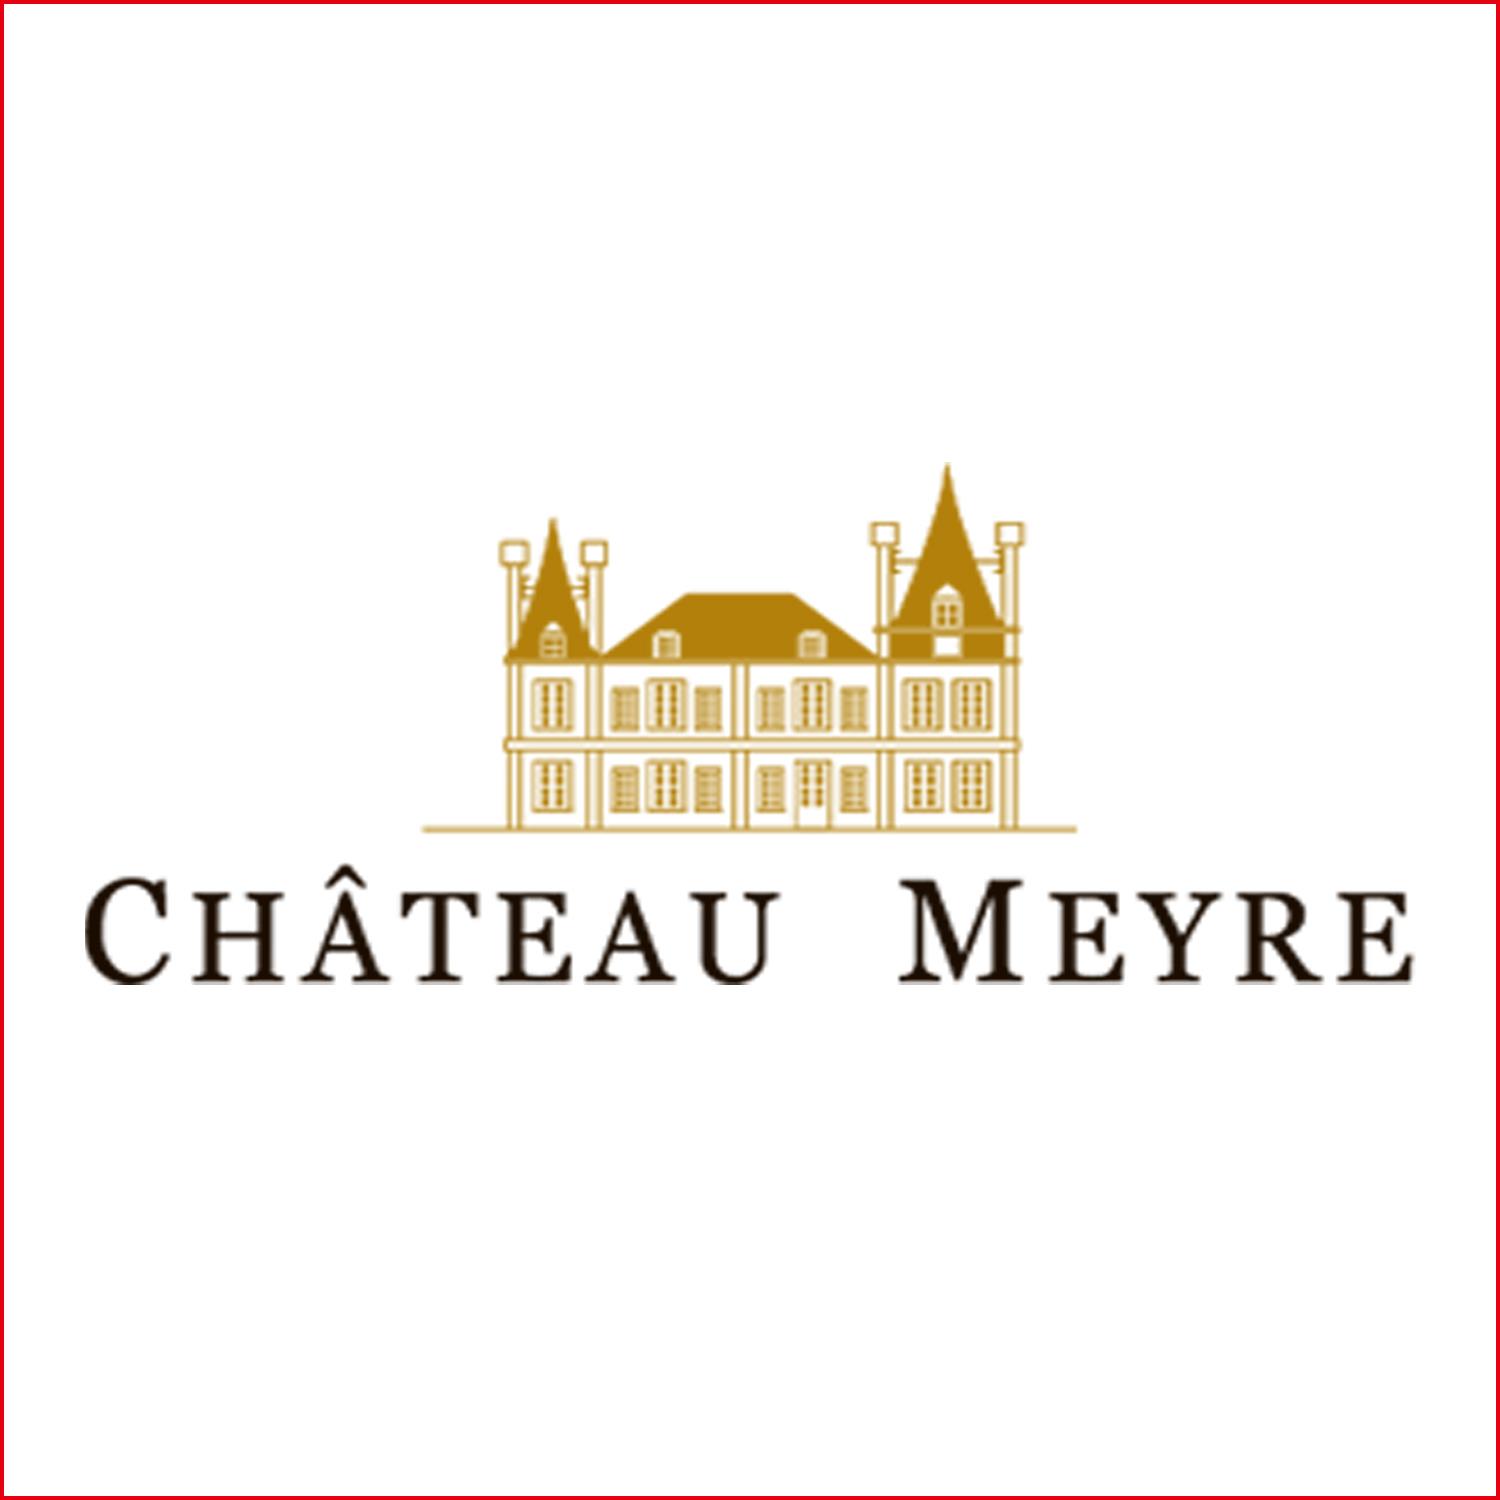 梅爾中級酒莊 Chateau Meyre